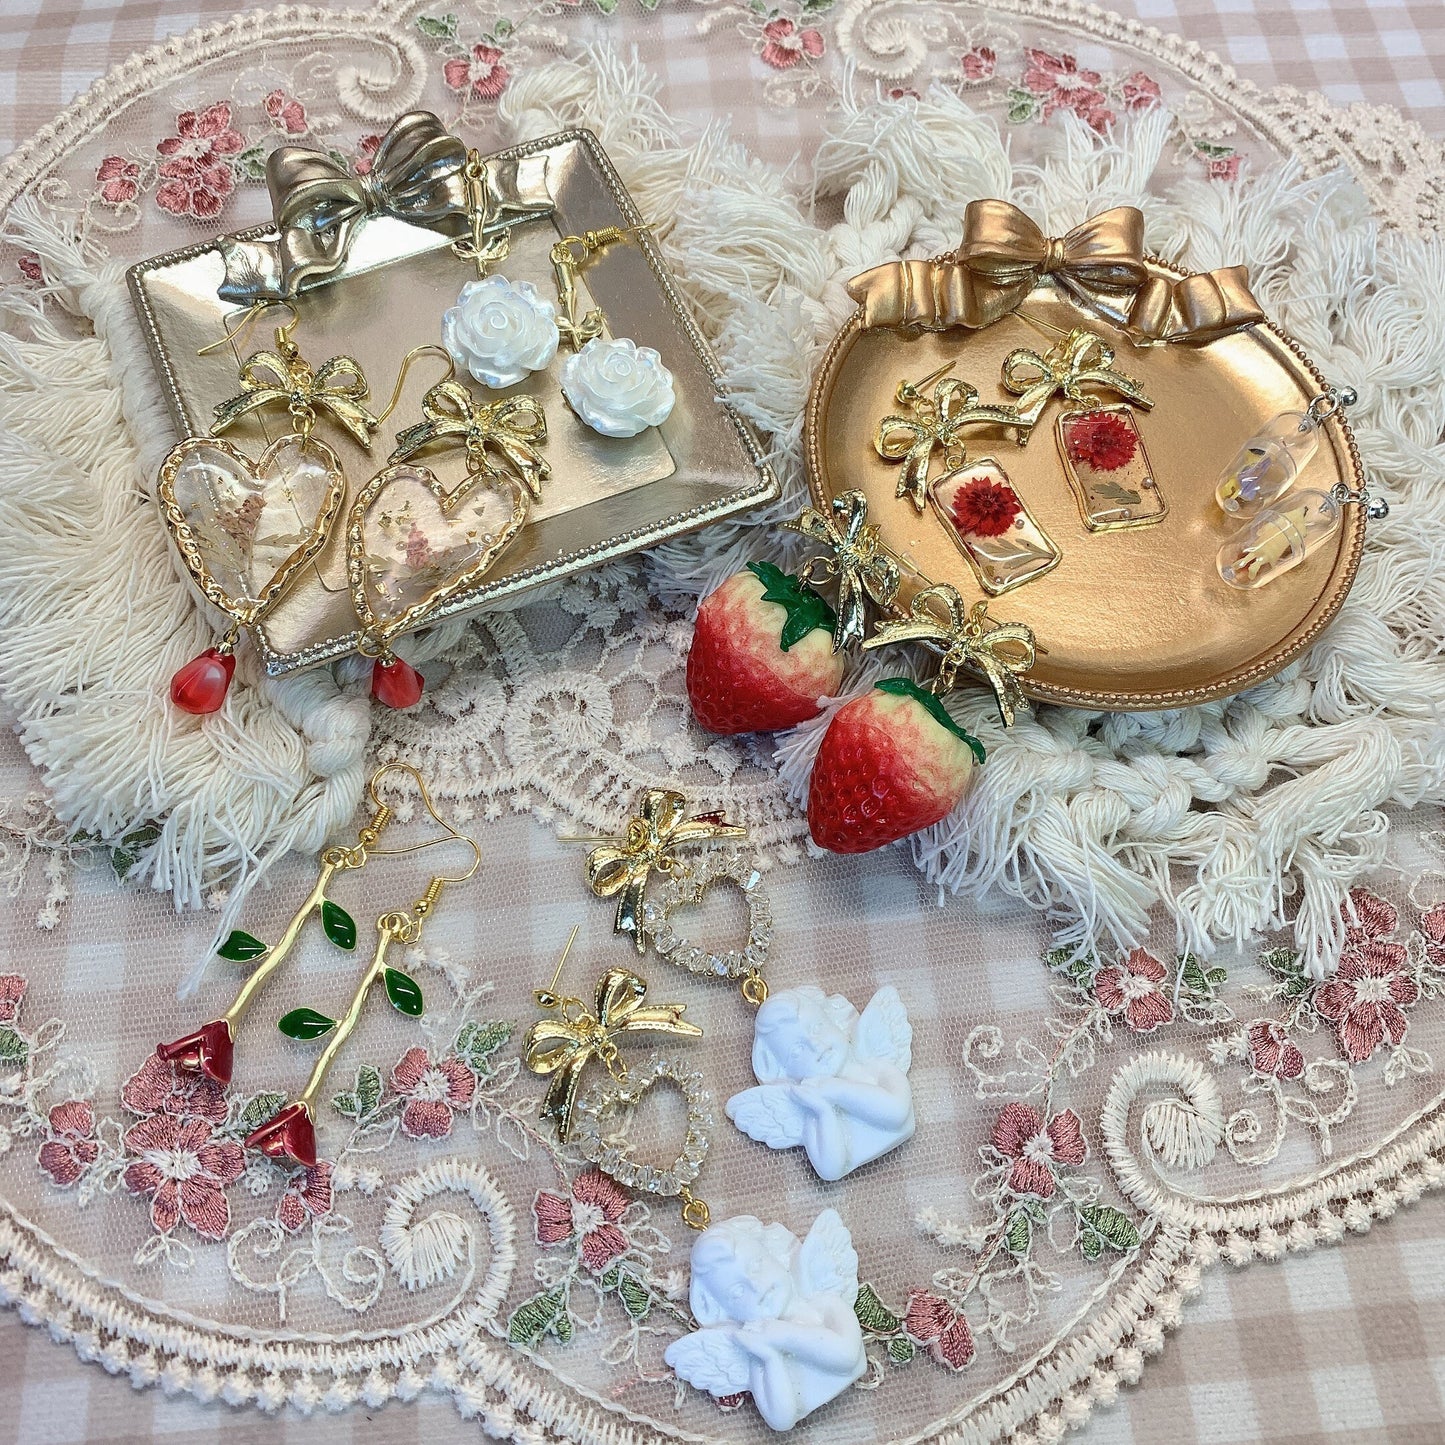 Moya handmade earrings「autumn dream」